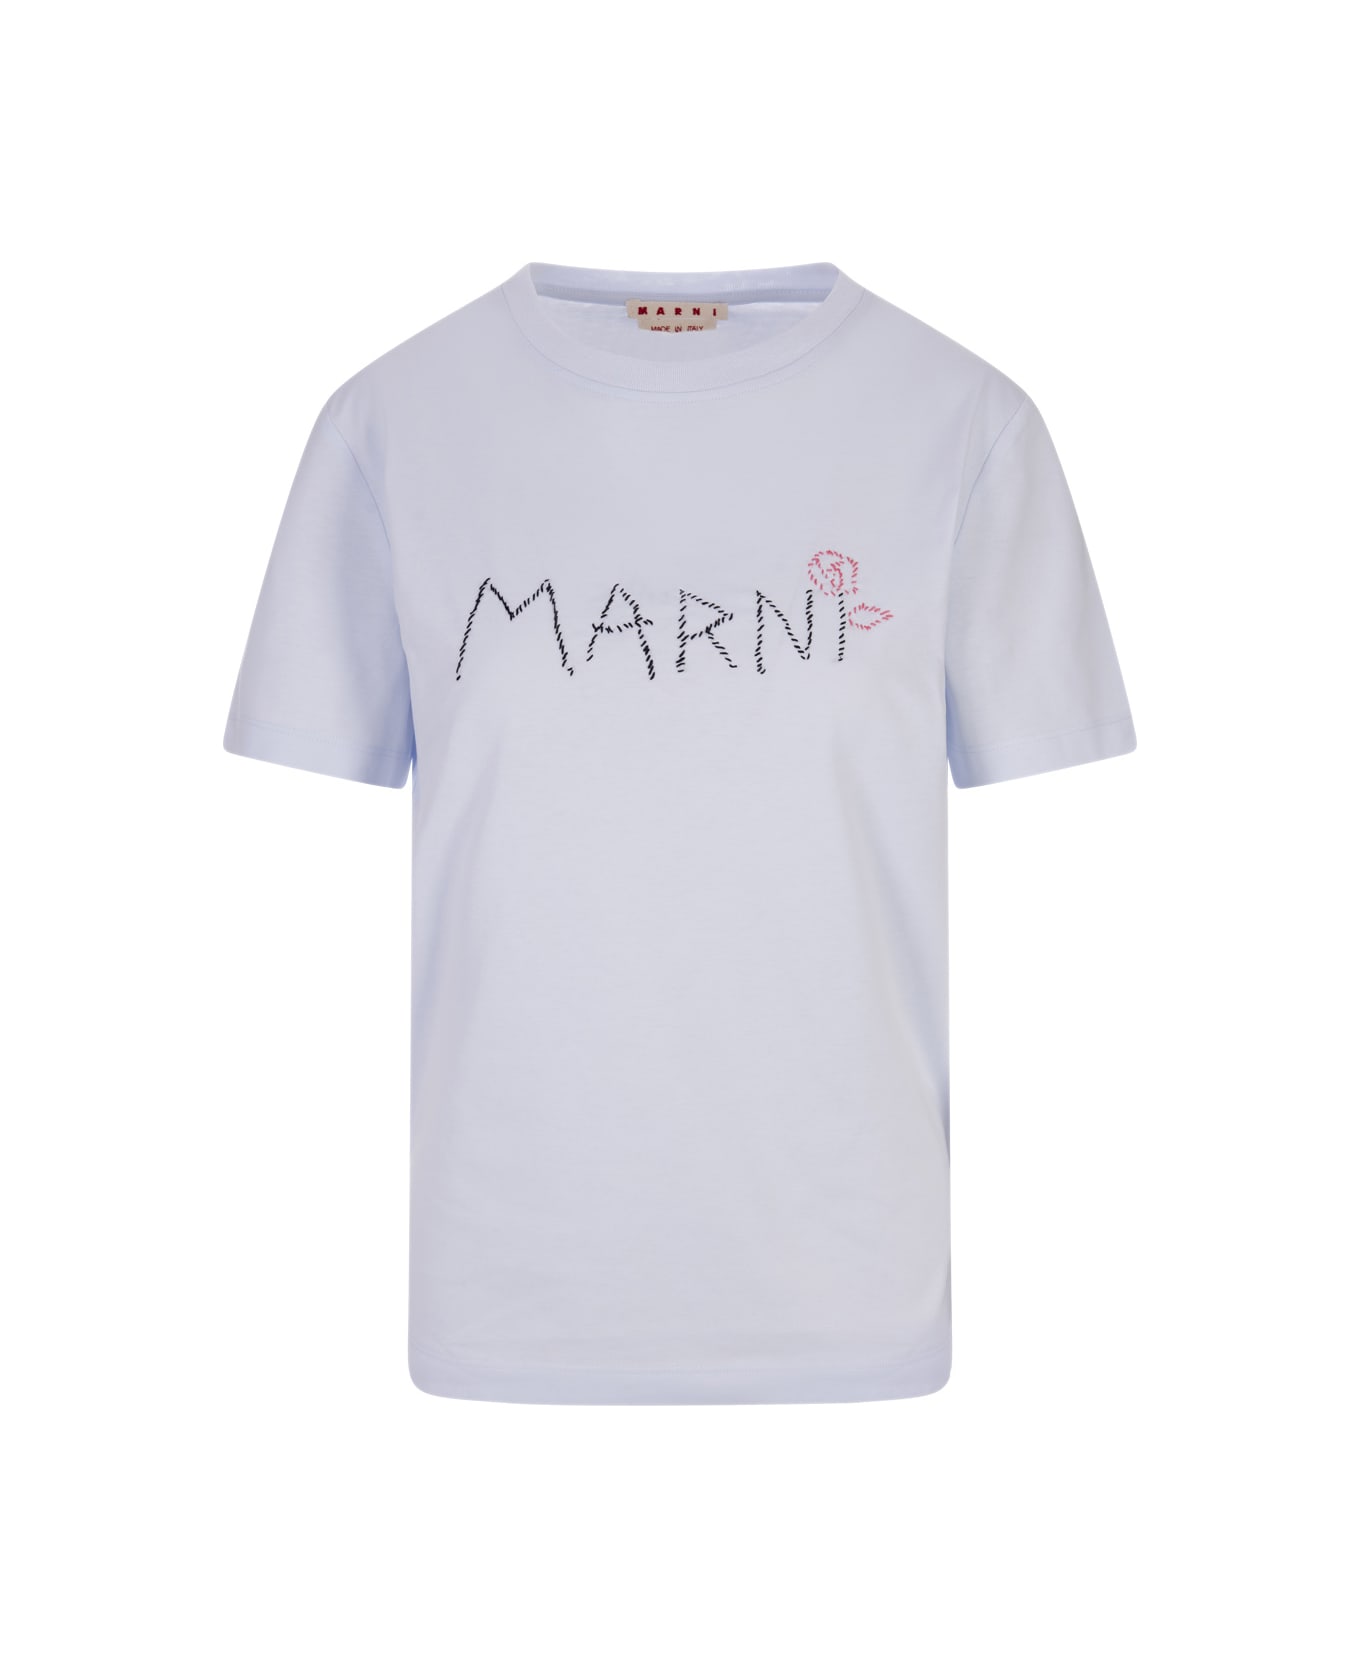 Marni Light Blue T-shirt With Marni Stitching - Blue